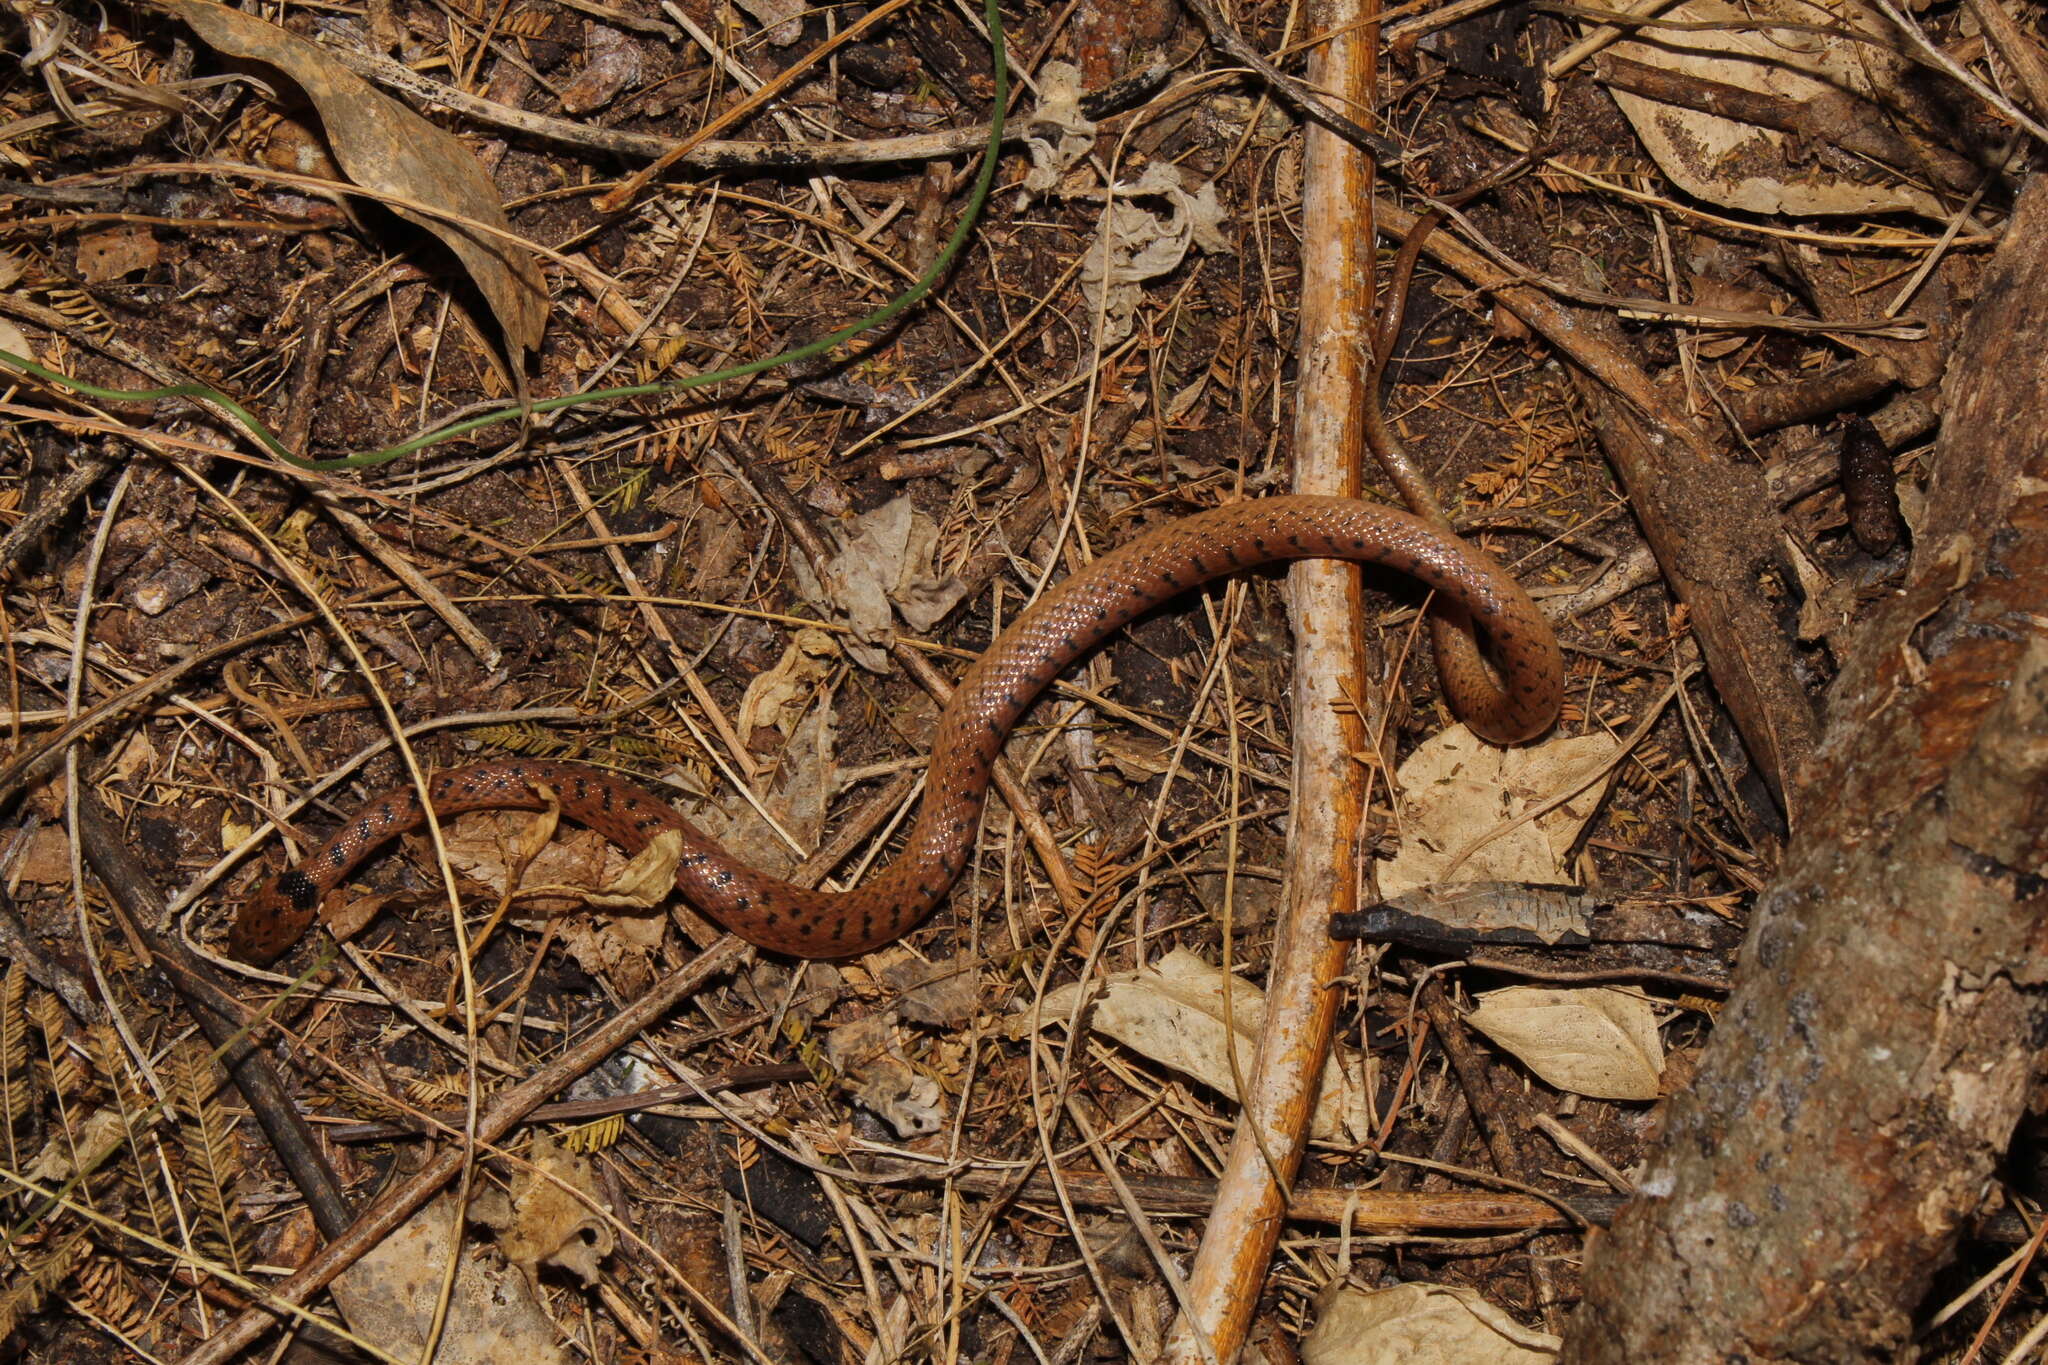 Image of Western Cat-eyed Snake